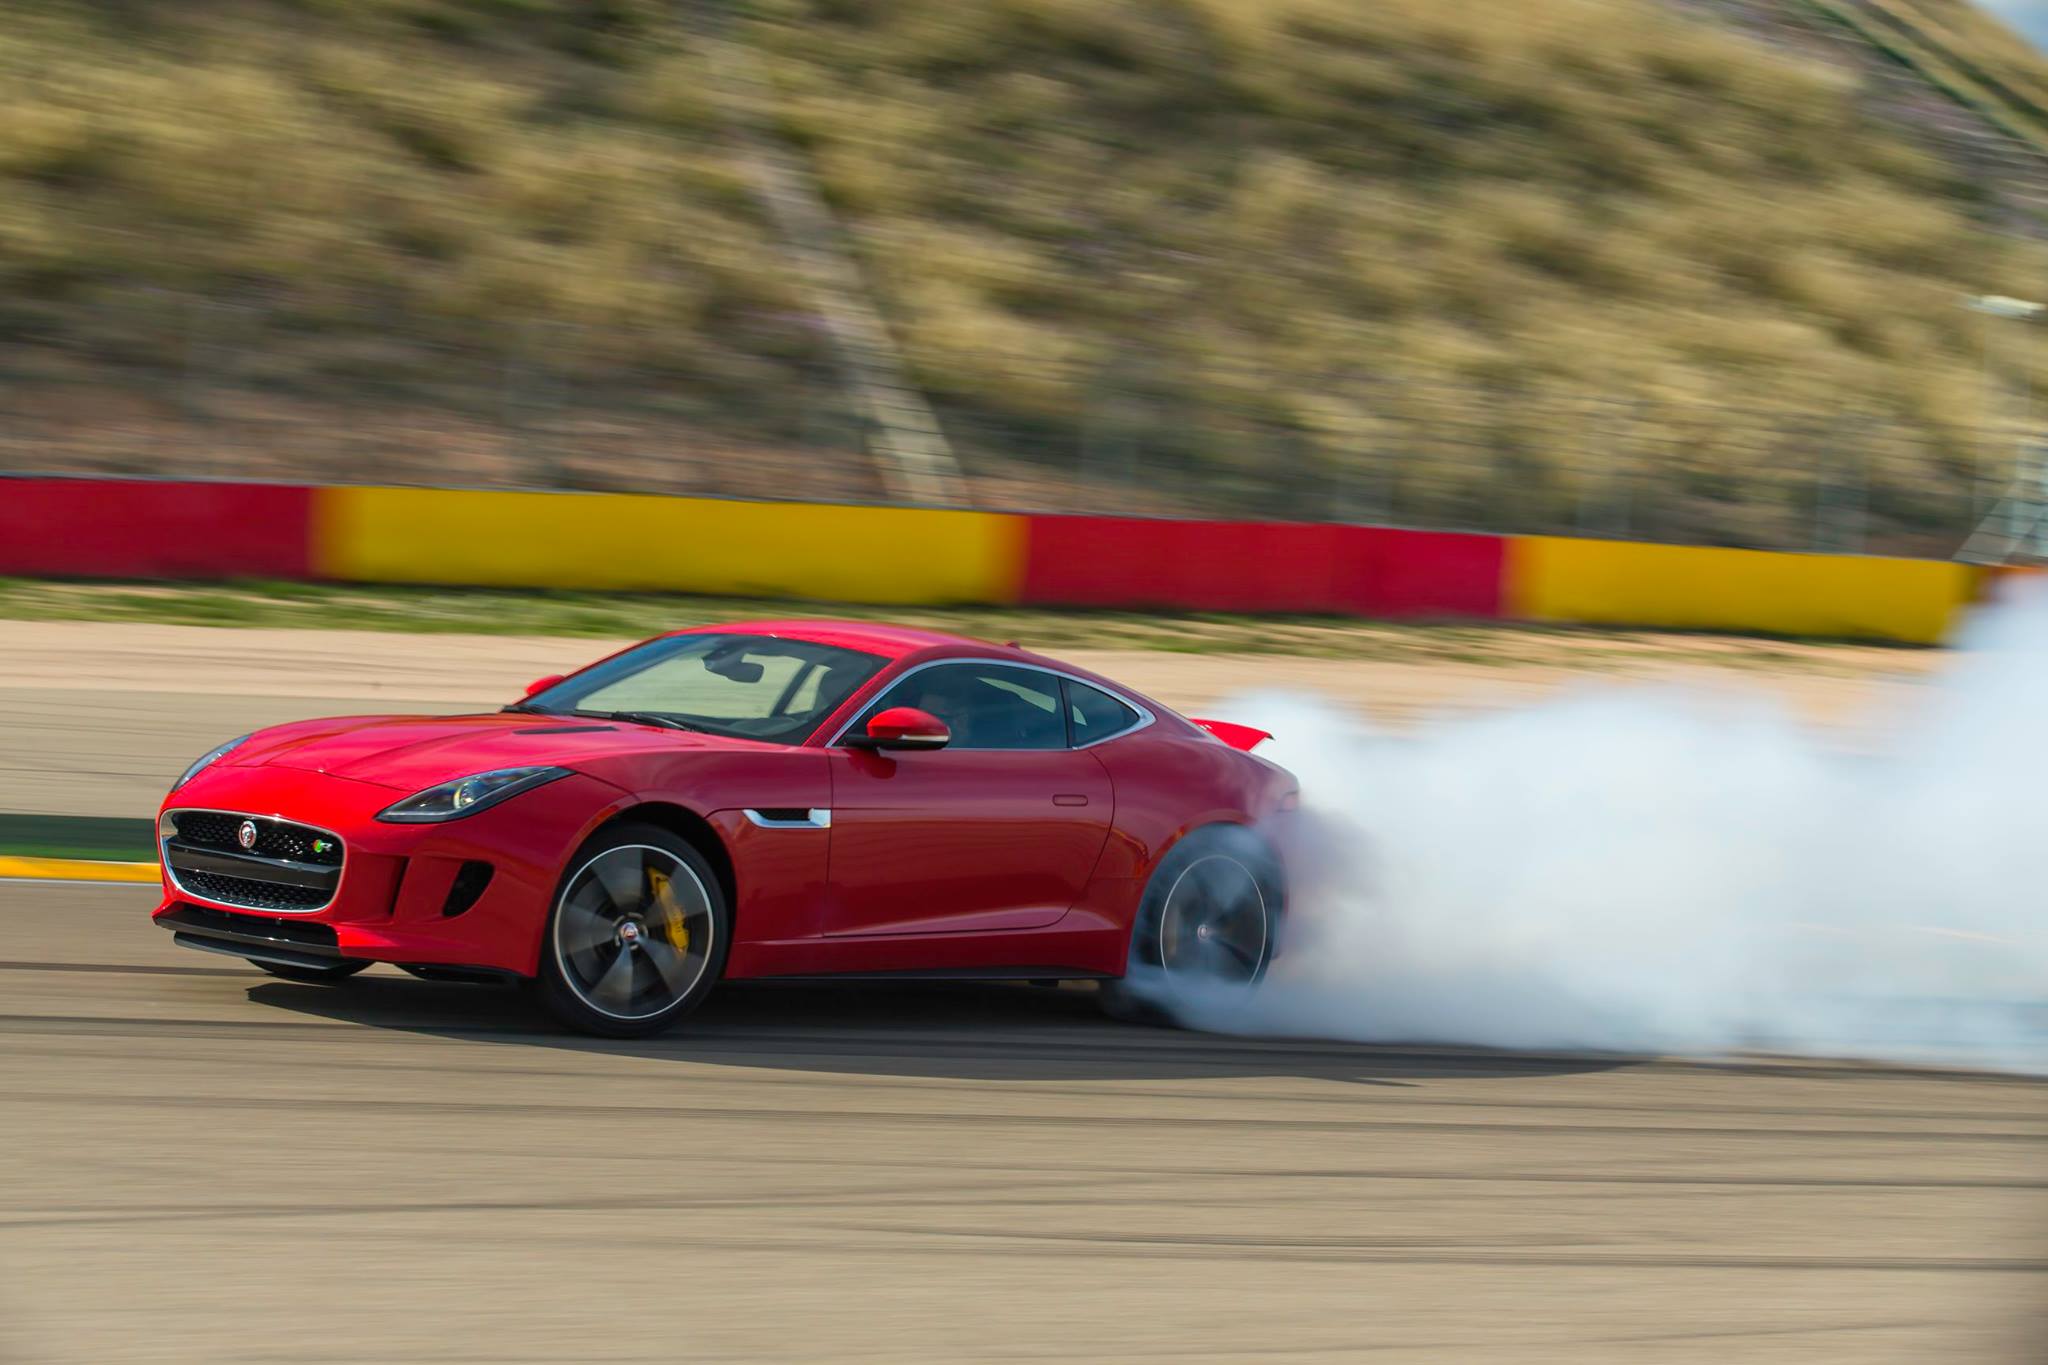 Drifting the Jaguar F-Type Coupe V8 R